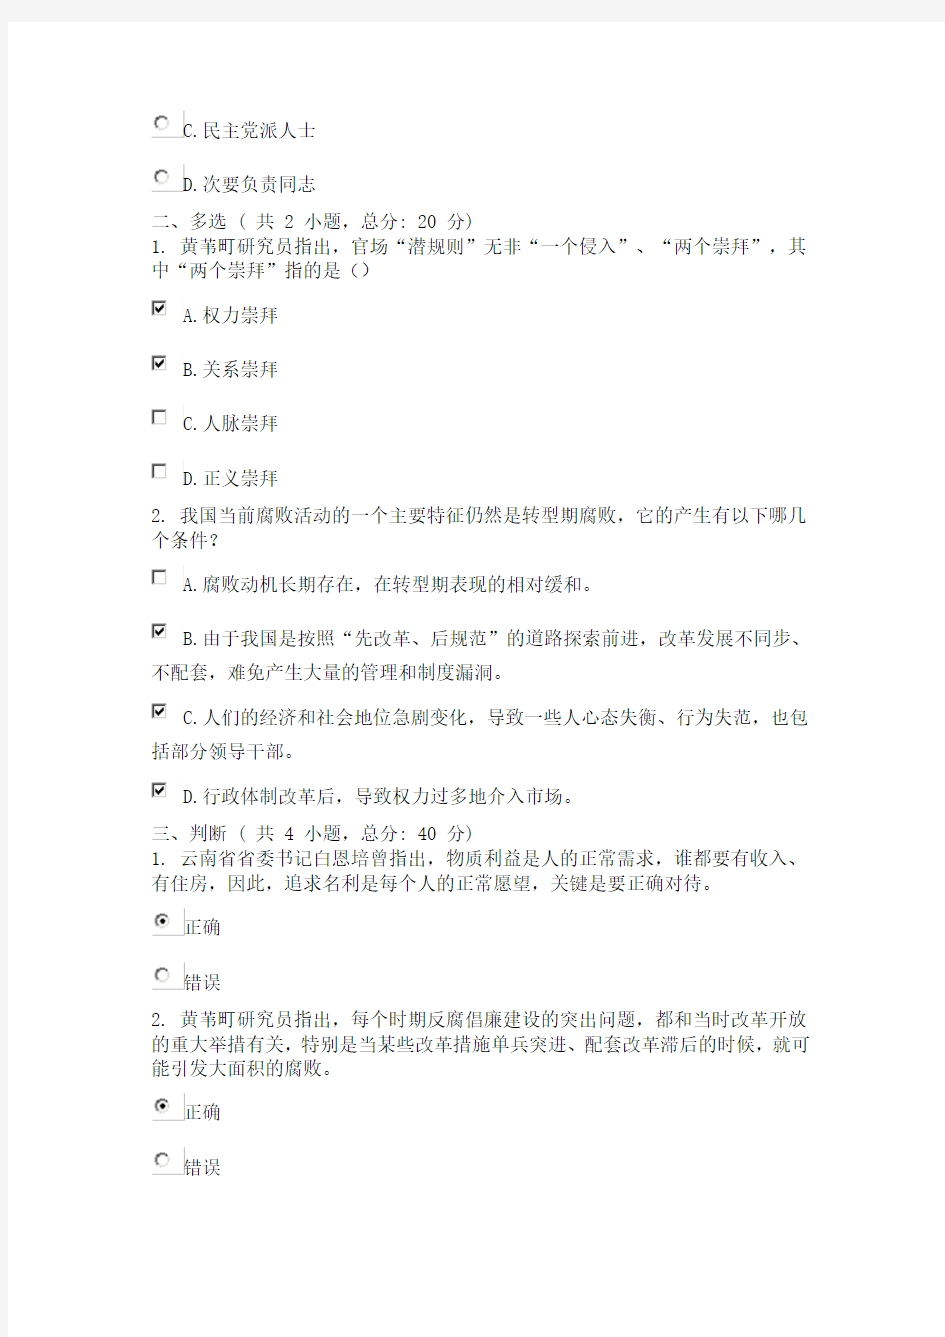 广东省干部培训网络学院 2类 党内制度建设的里程碑  考试 答案 (上) 课程的考试(90分)